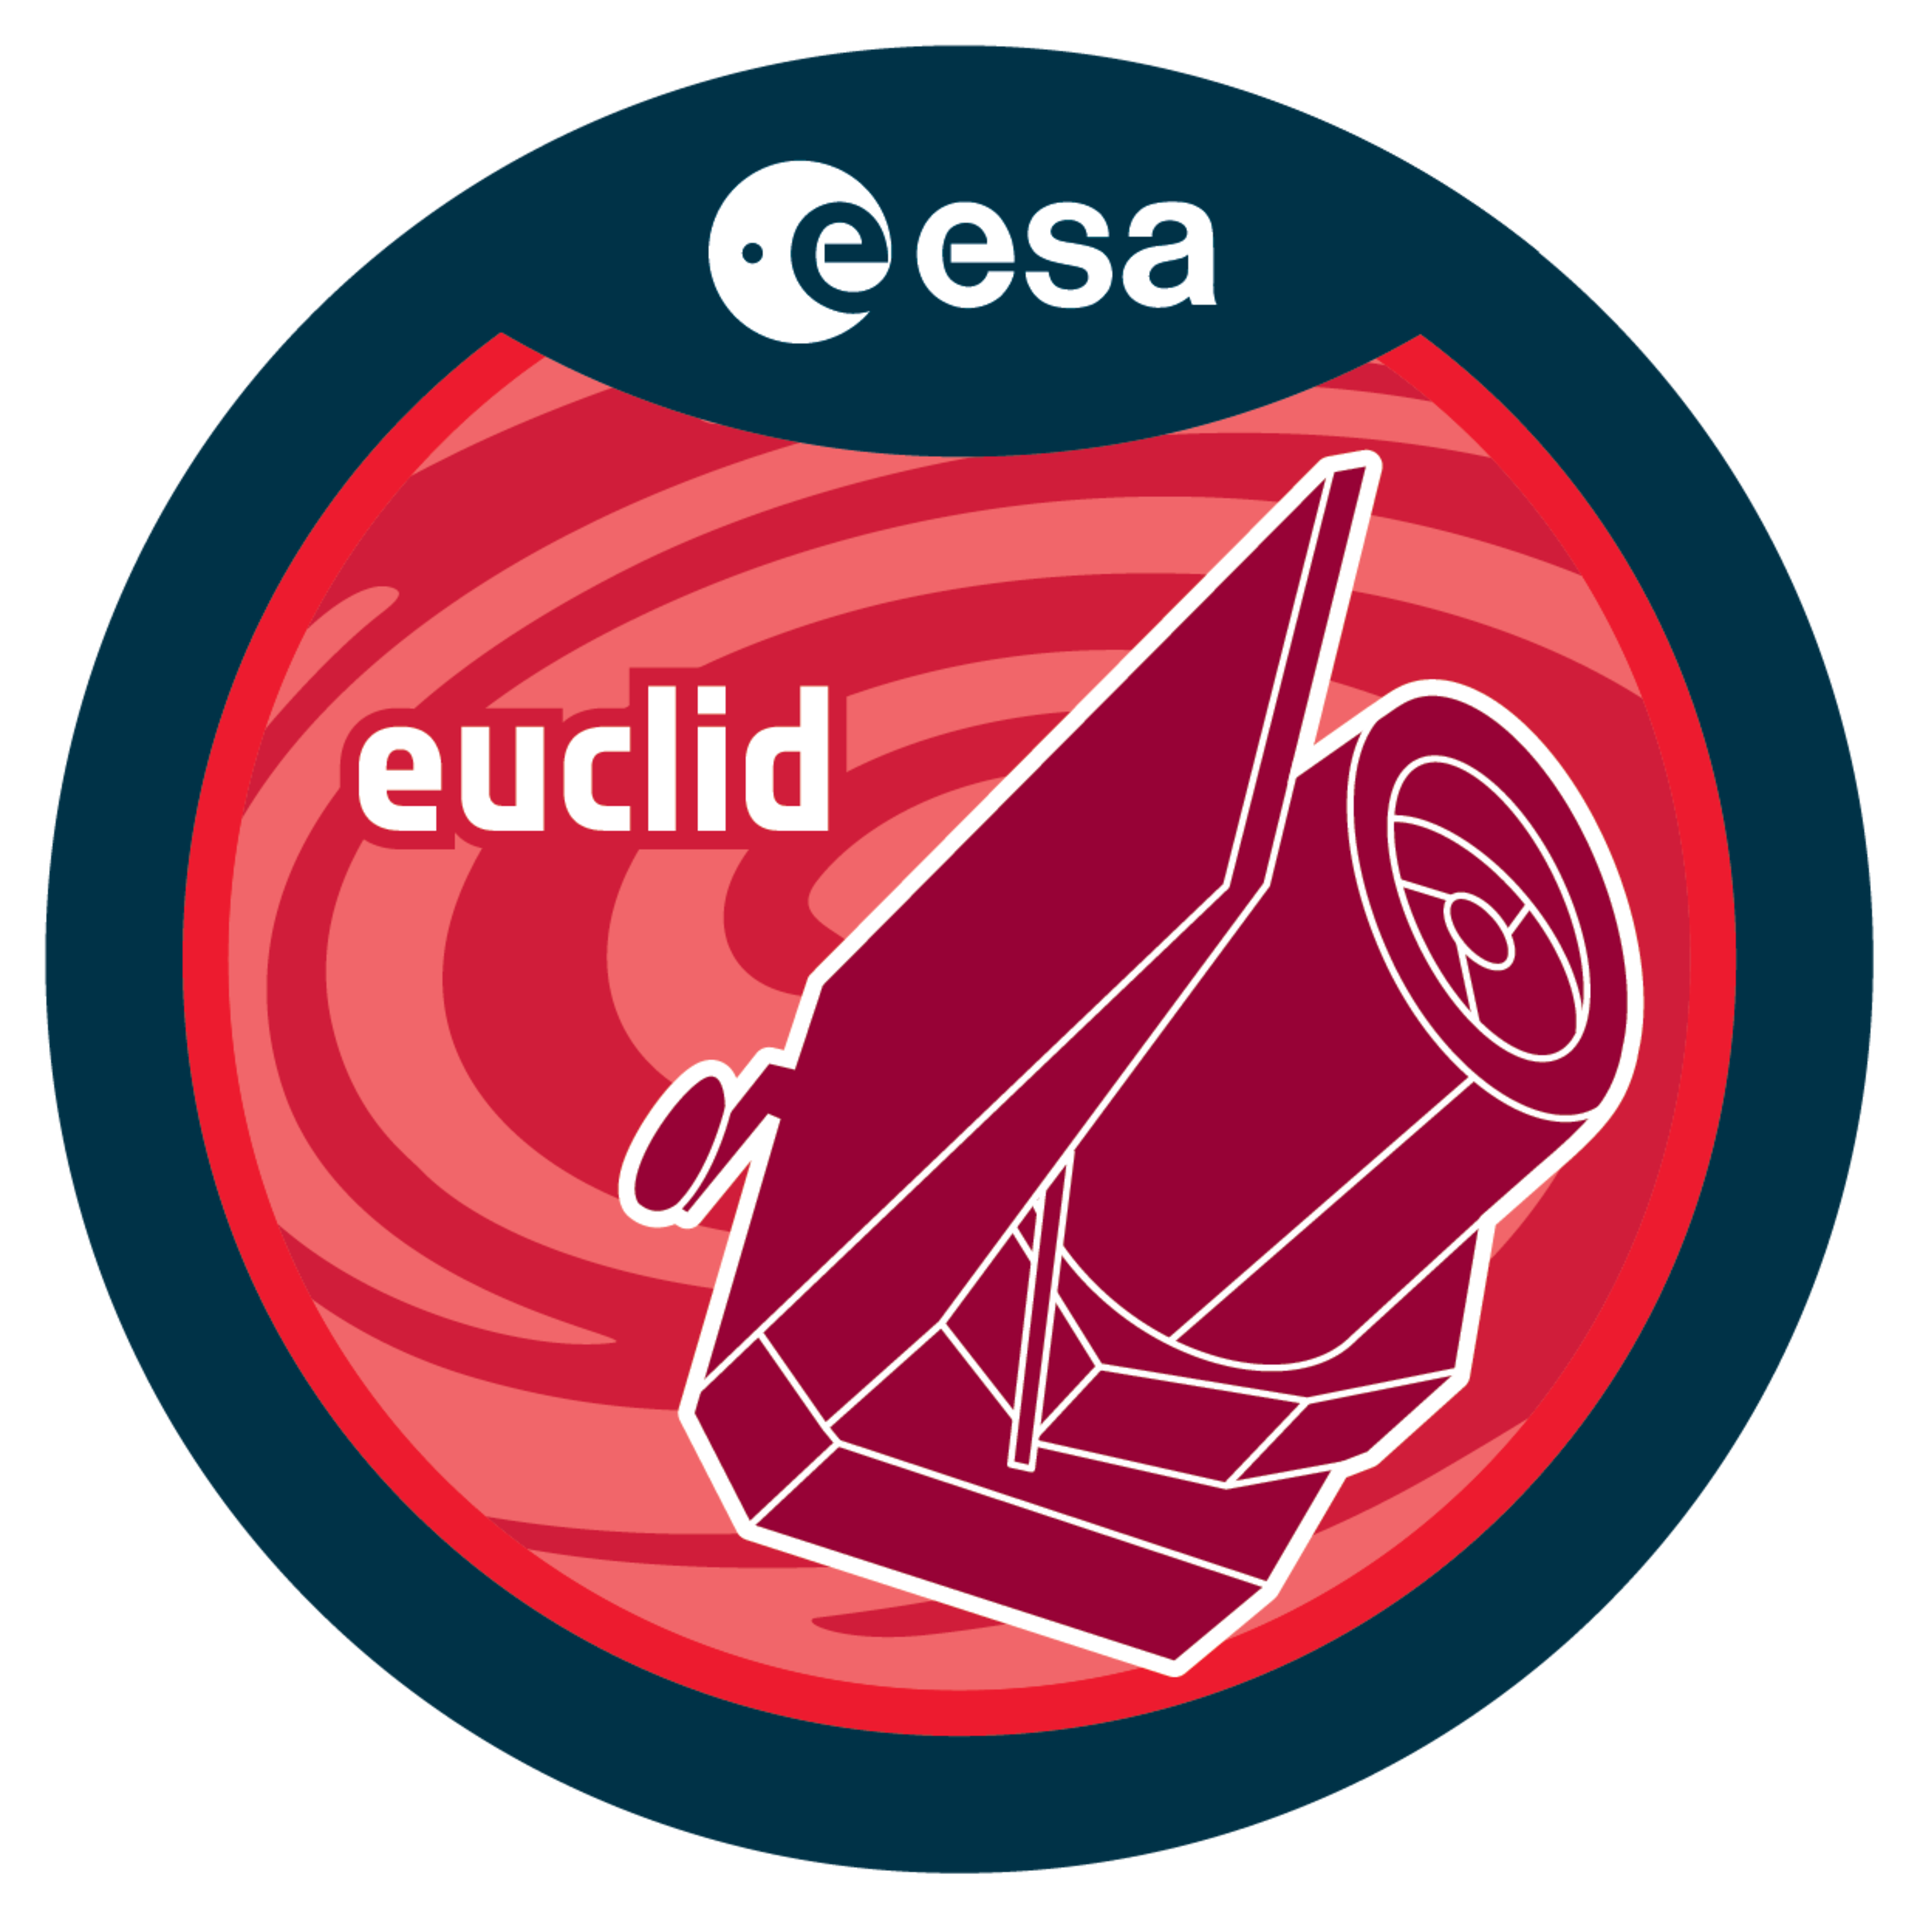 Logo de misión Euclid de la ESA